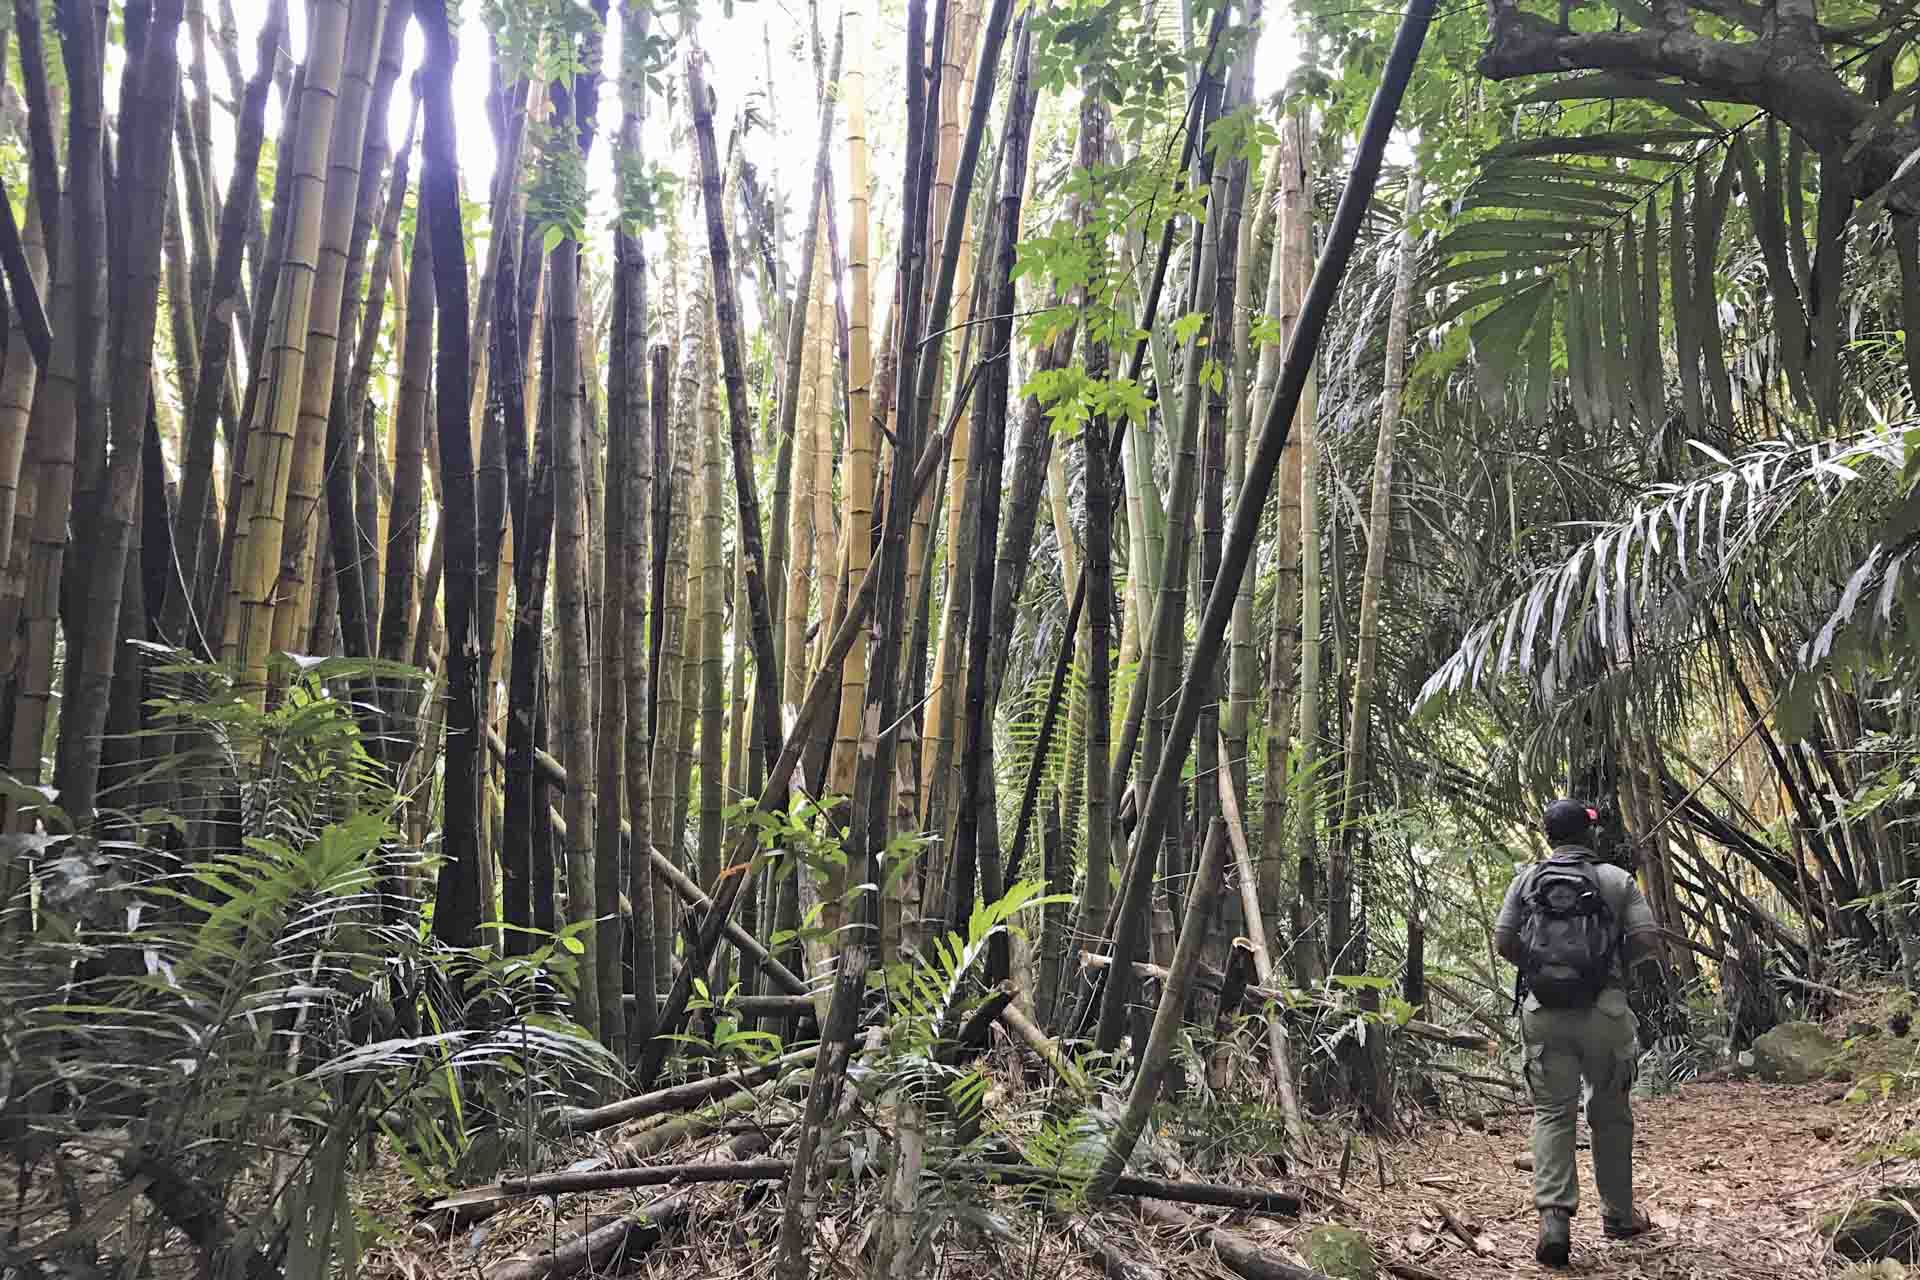 Los laboratorios biológico agricolas de Amani (Tanzania) se plantaron bambú y otras especies foráneas en parcelas experimentales